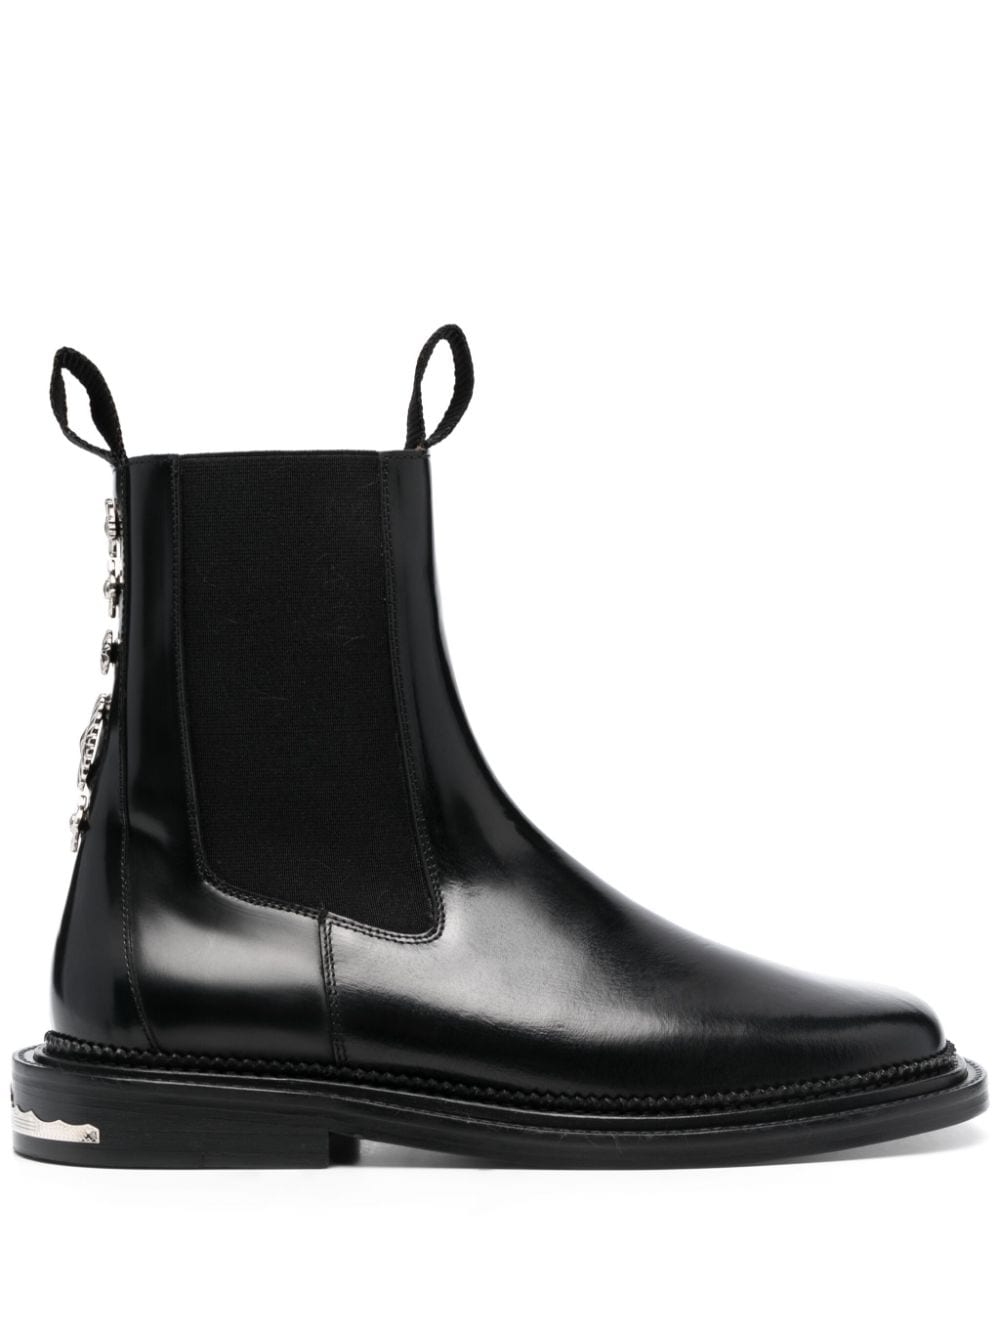 Toga Virilis stud-embellished leather ankle boots - Black von Toga Virilis